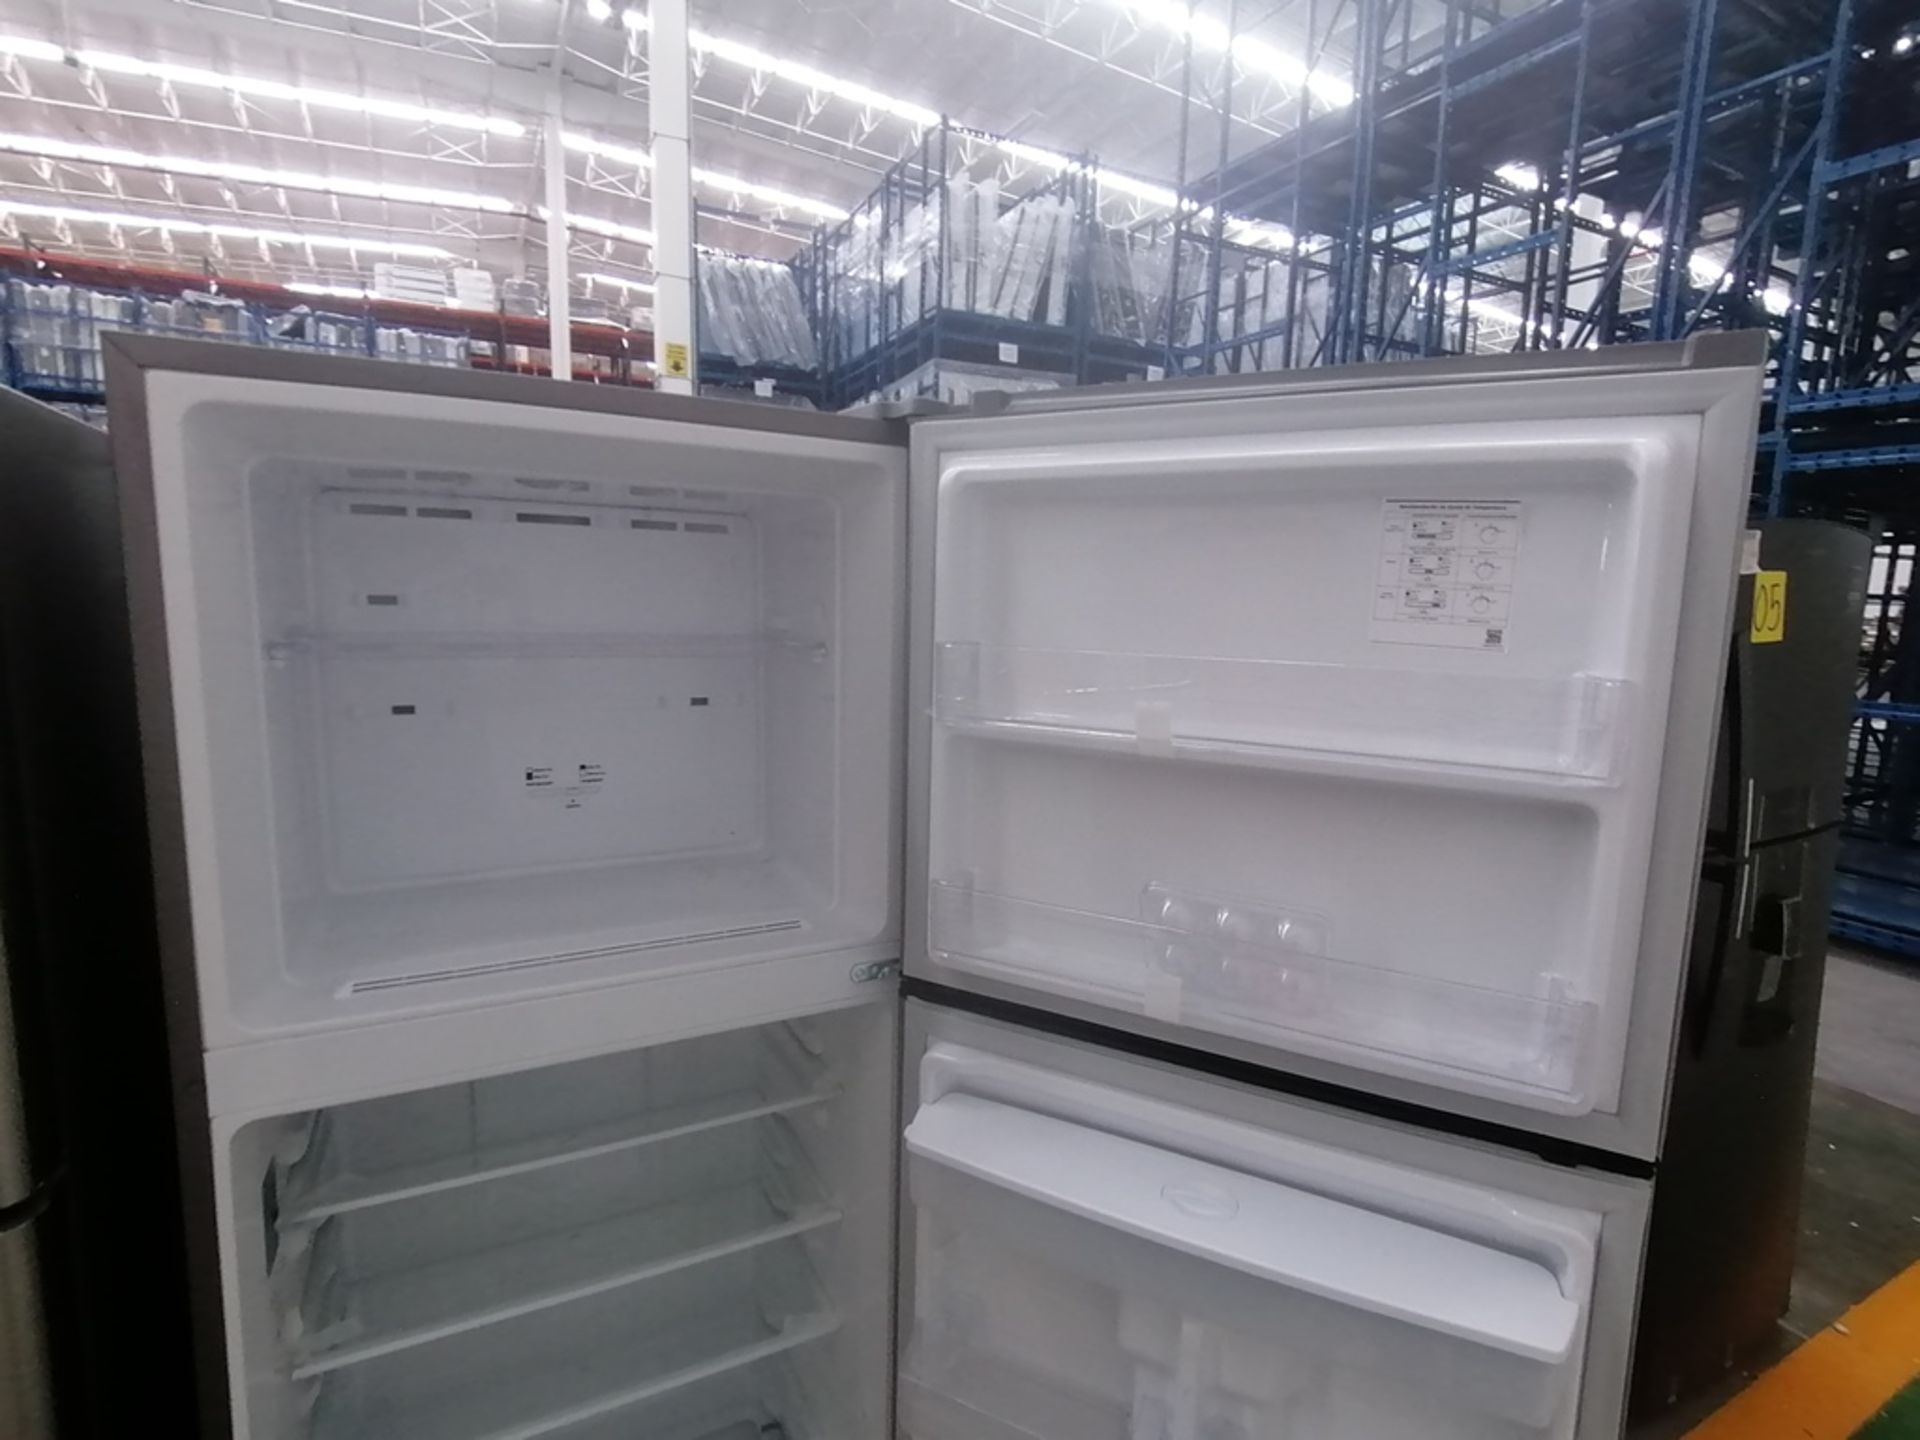 Lote de 2 refrigeradores incluye: 1 Refrigerador con dispensador de agua, Marca Mabe, Modelo RME360 - Image 11 of 15